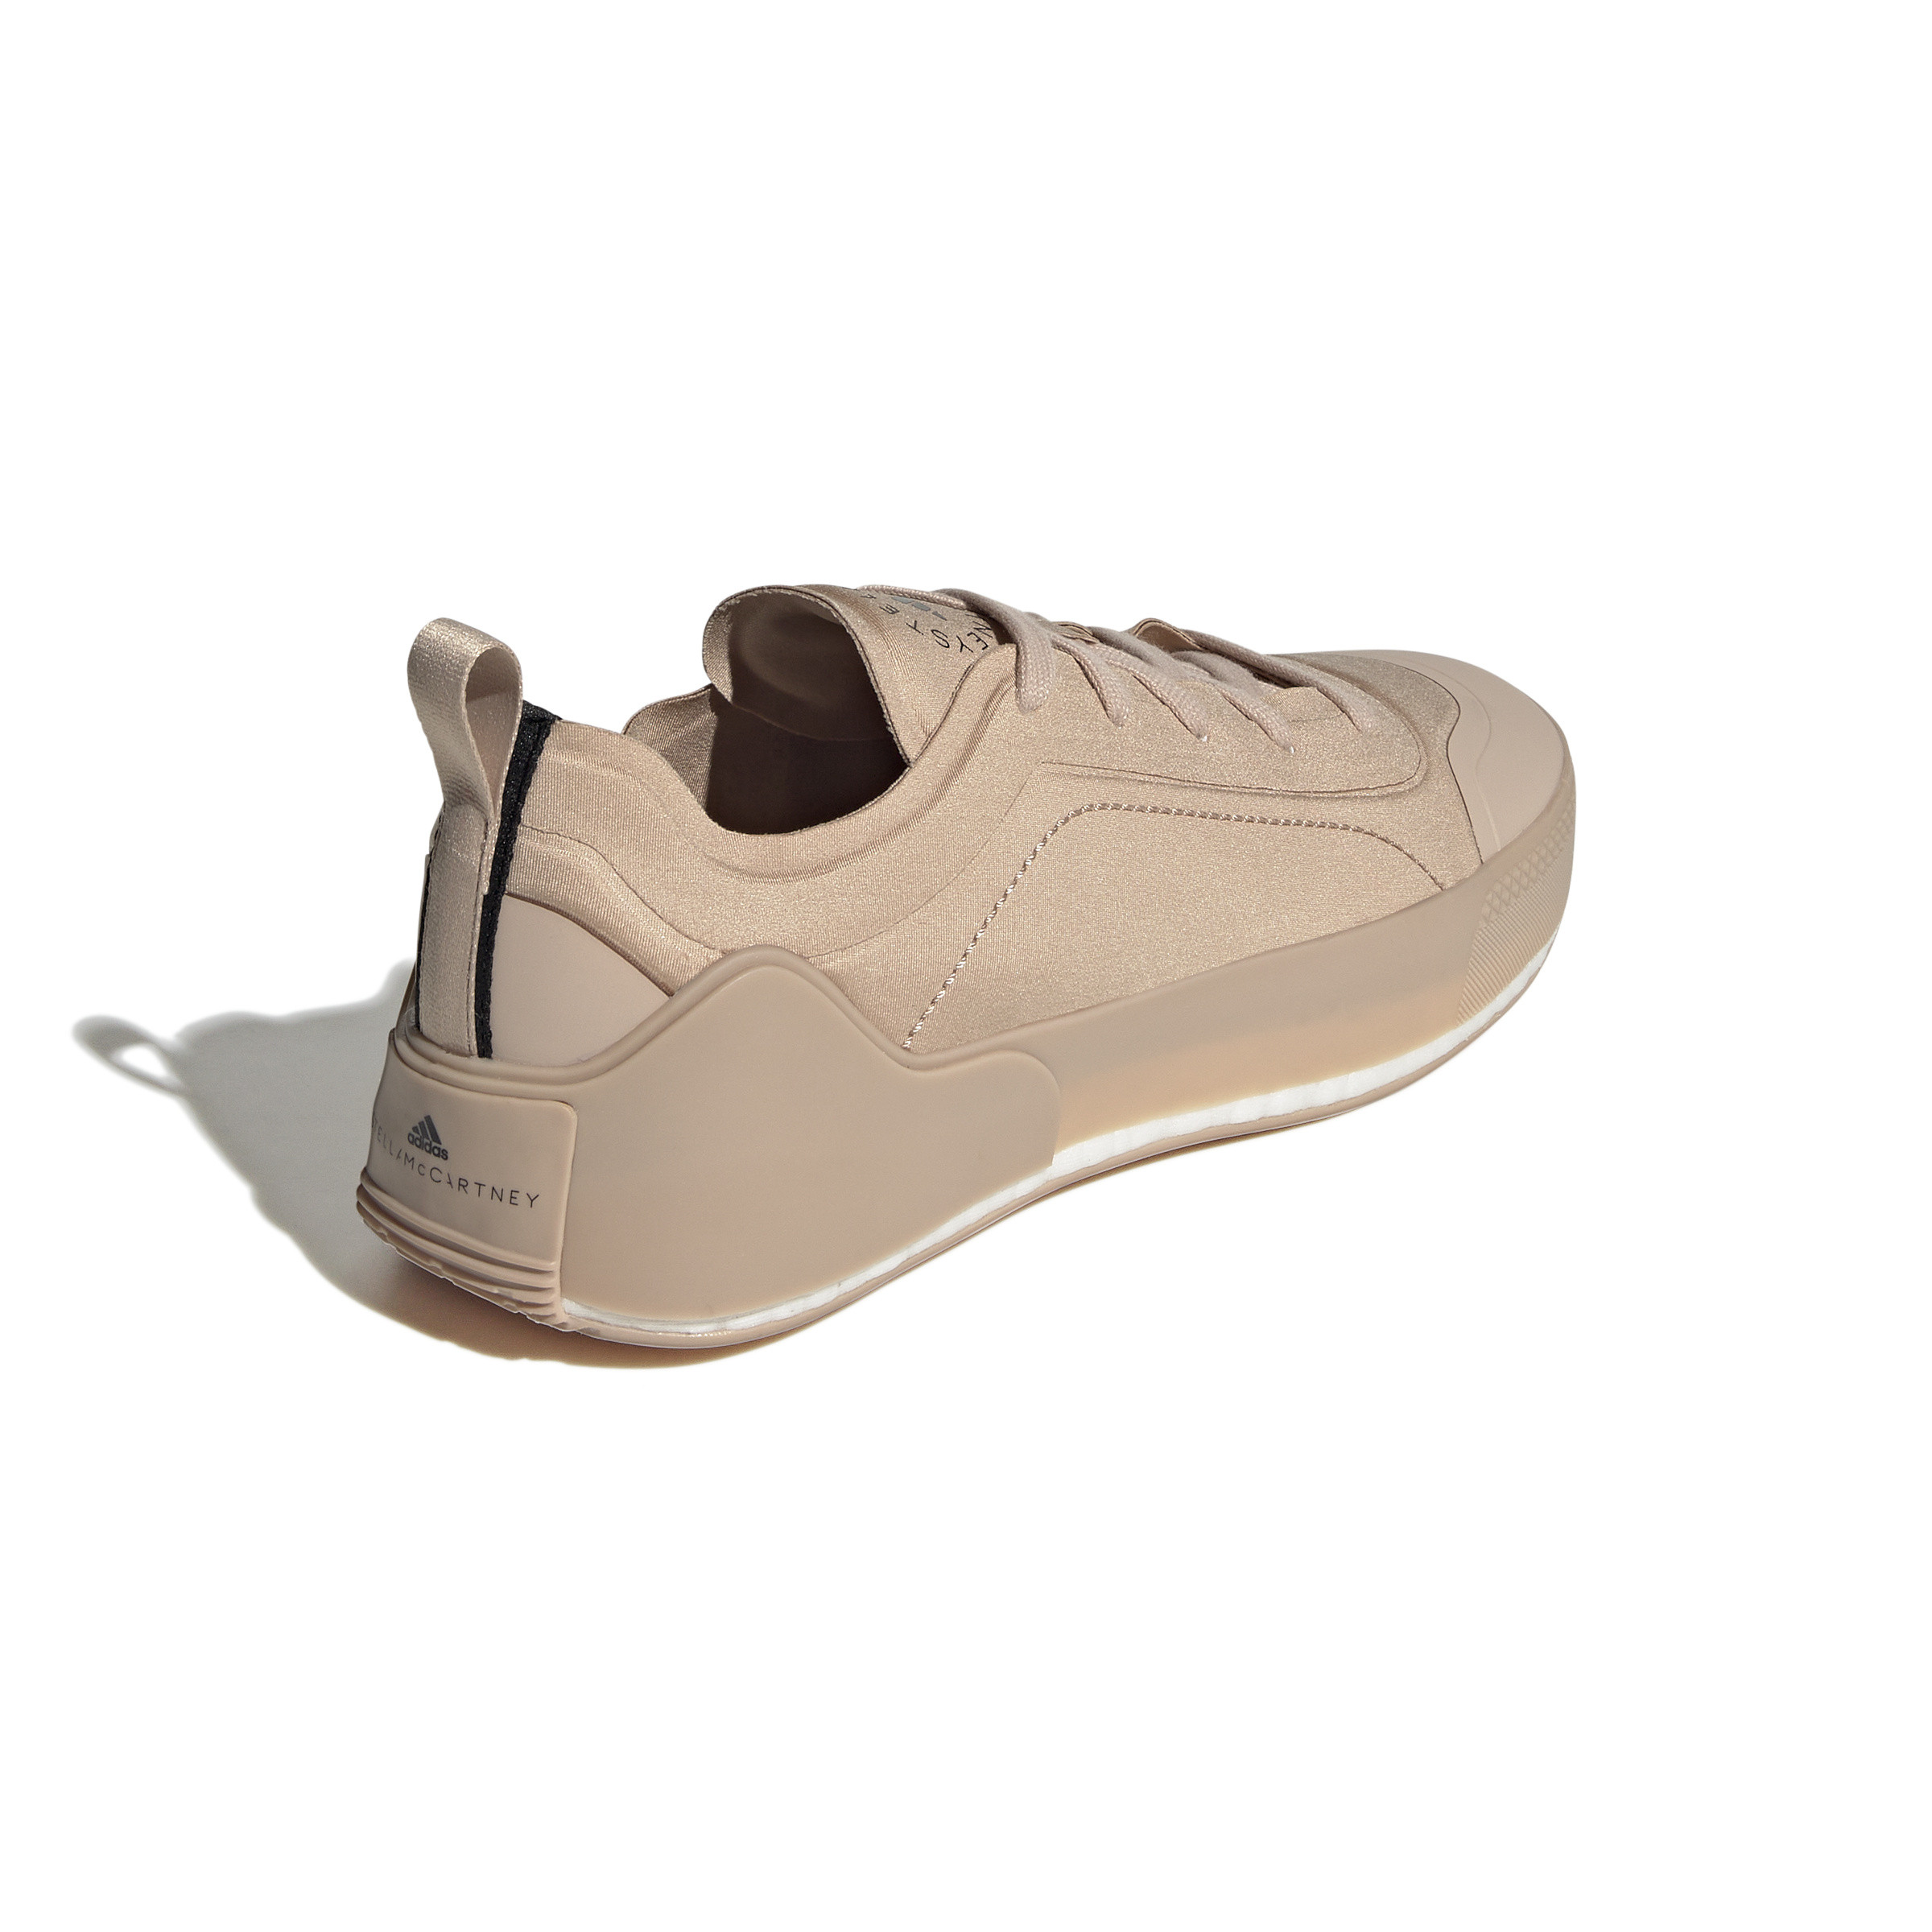 Adidas by Stella Mccartney Treino shoes, Nougat Beige, large image number 2